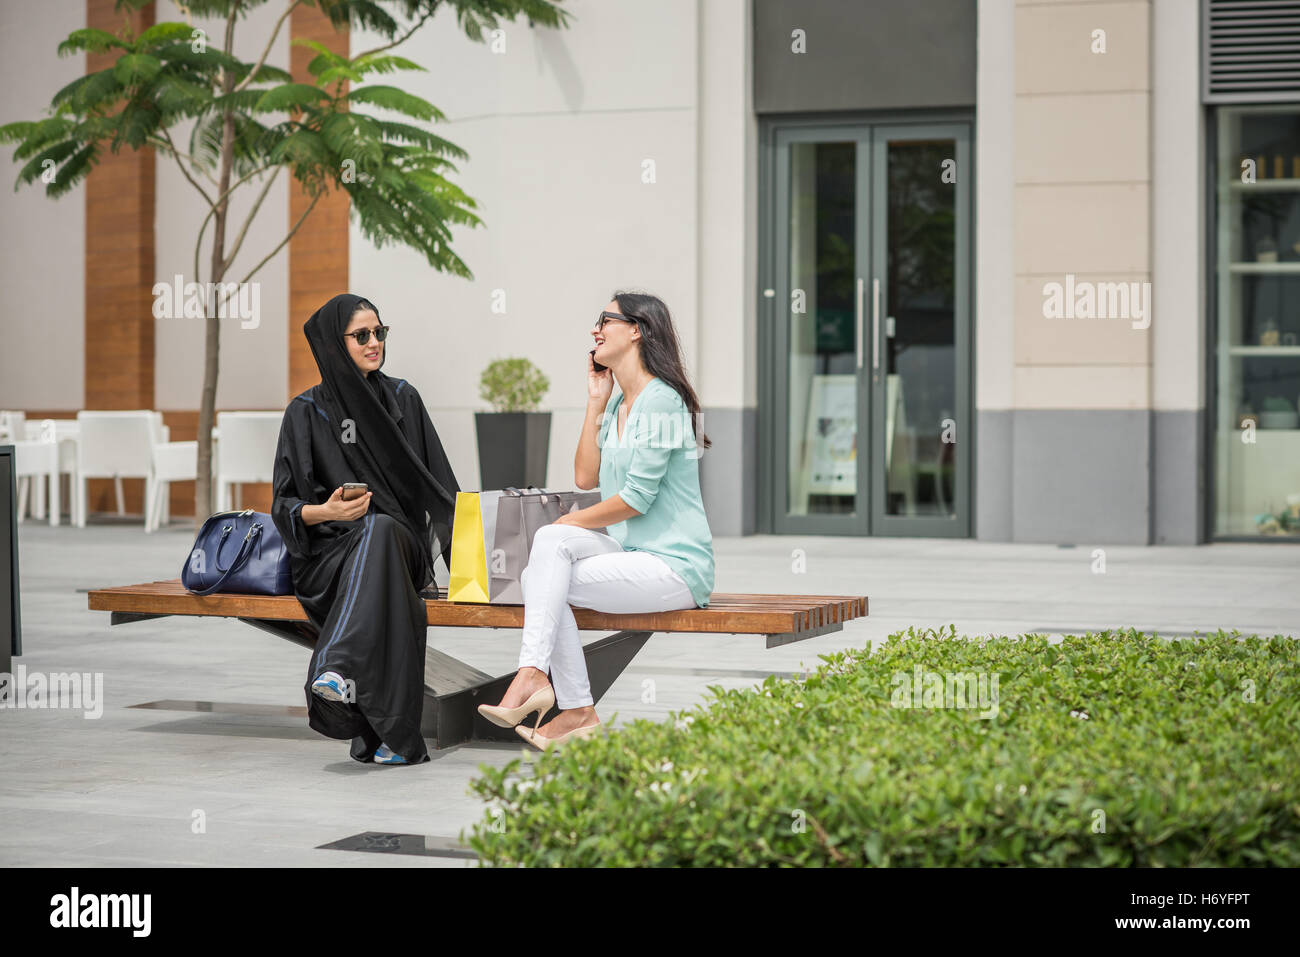 Junge Naher Osten Frau tragen traditionelle Kleidung auf der Bank sitzend mit Freundin, Dubai, Vereinigte Arabische Emirate Stockfoto